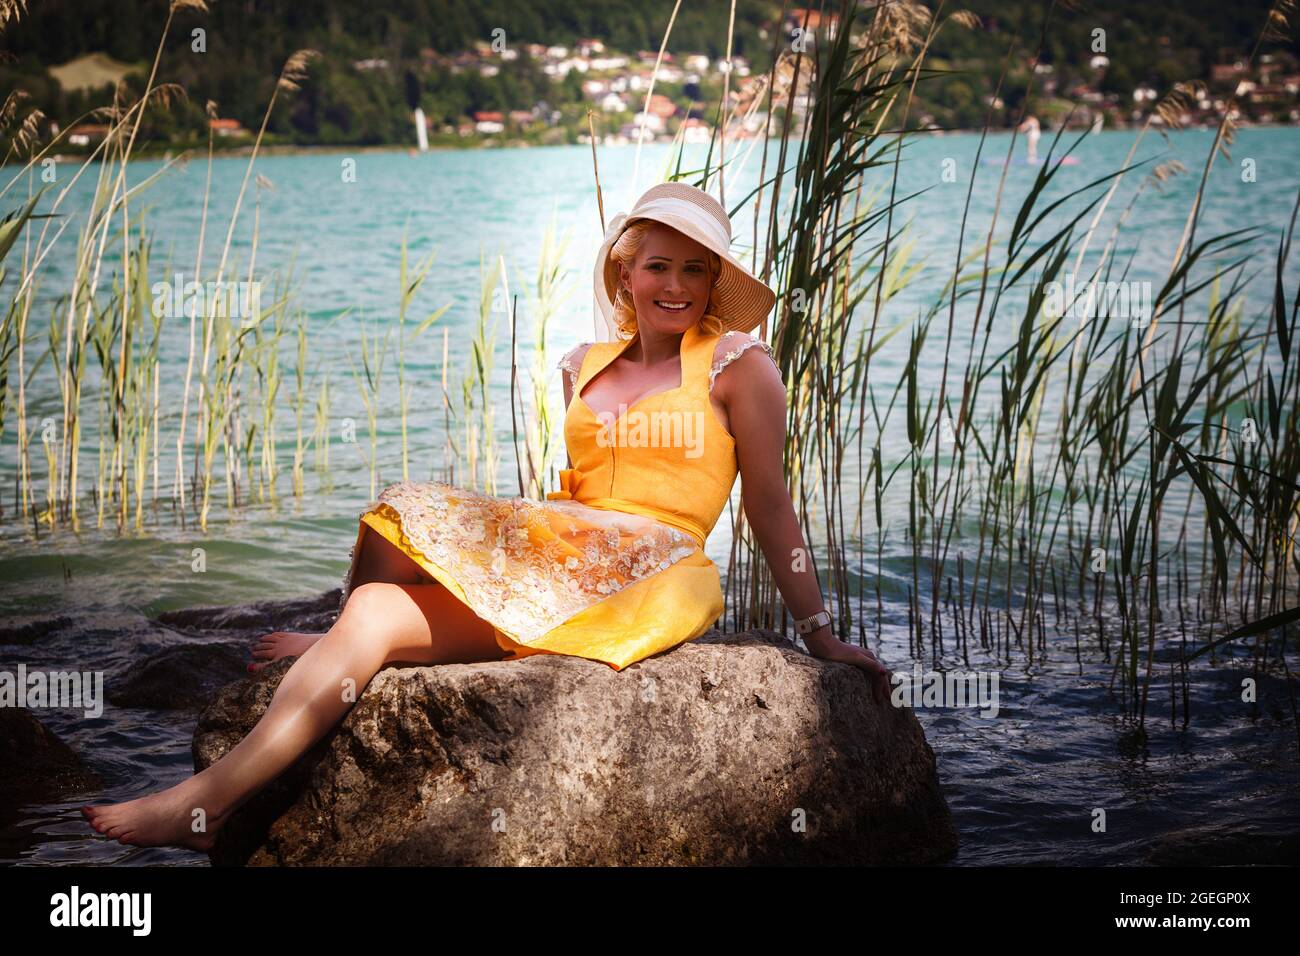 Mujer elegante con dirndl y sombrero de sol se sienta sonriendo en una roca en un lago Foto de stock